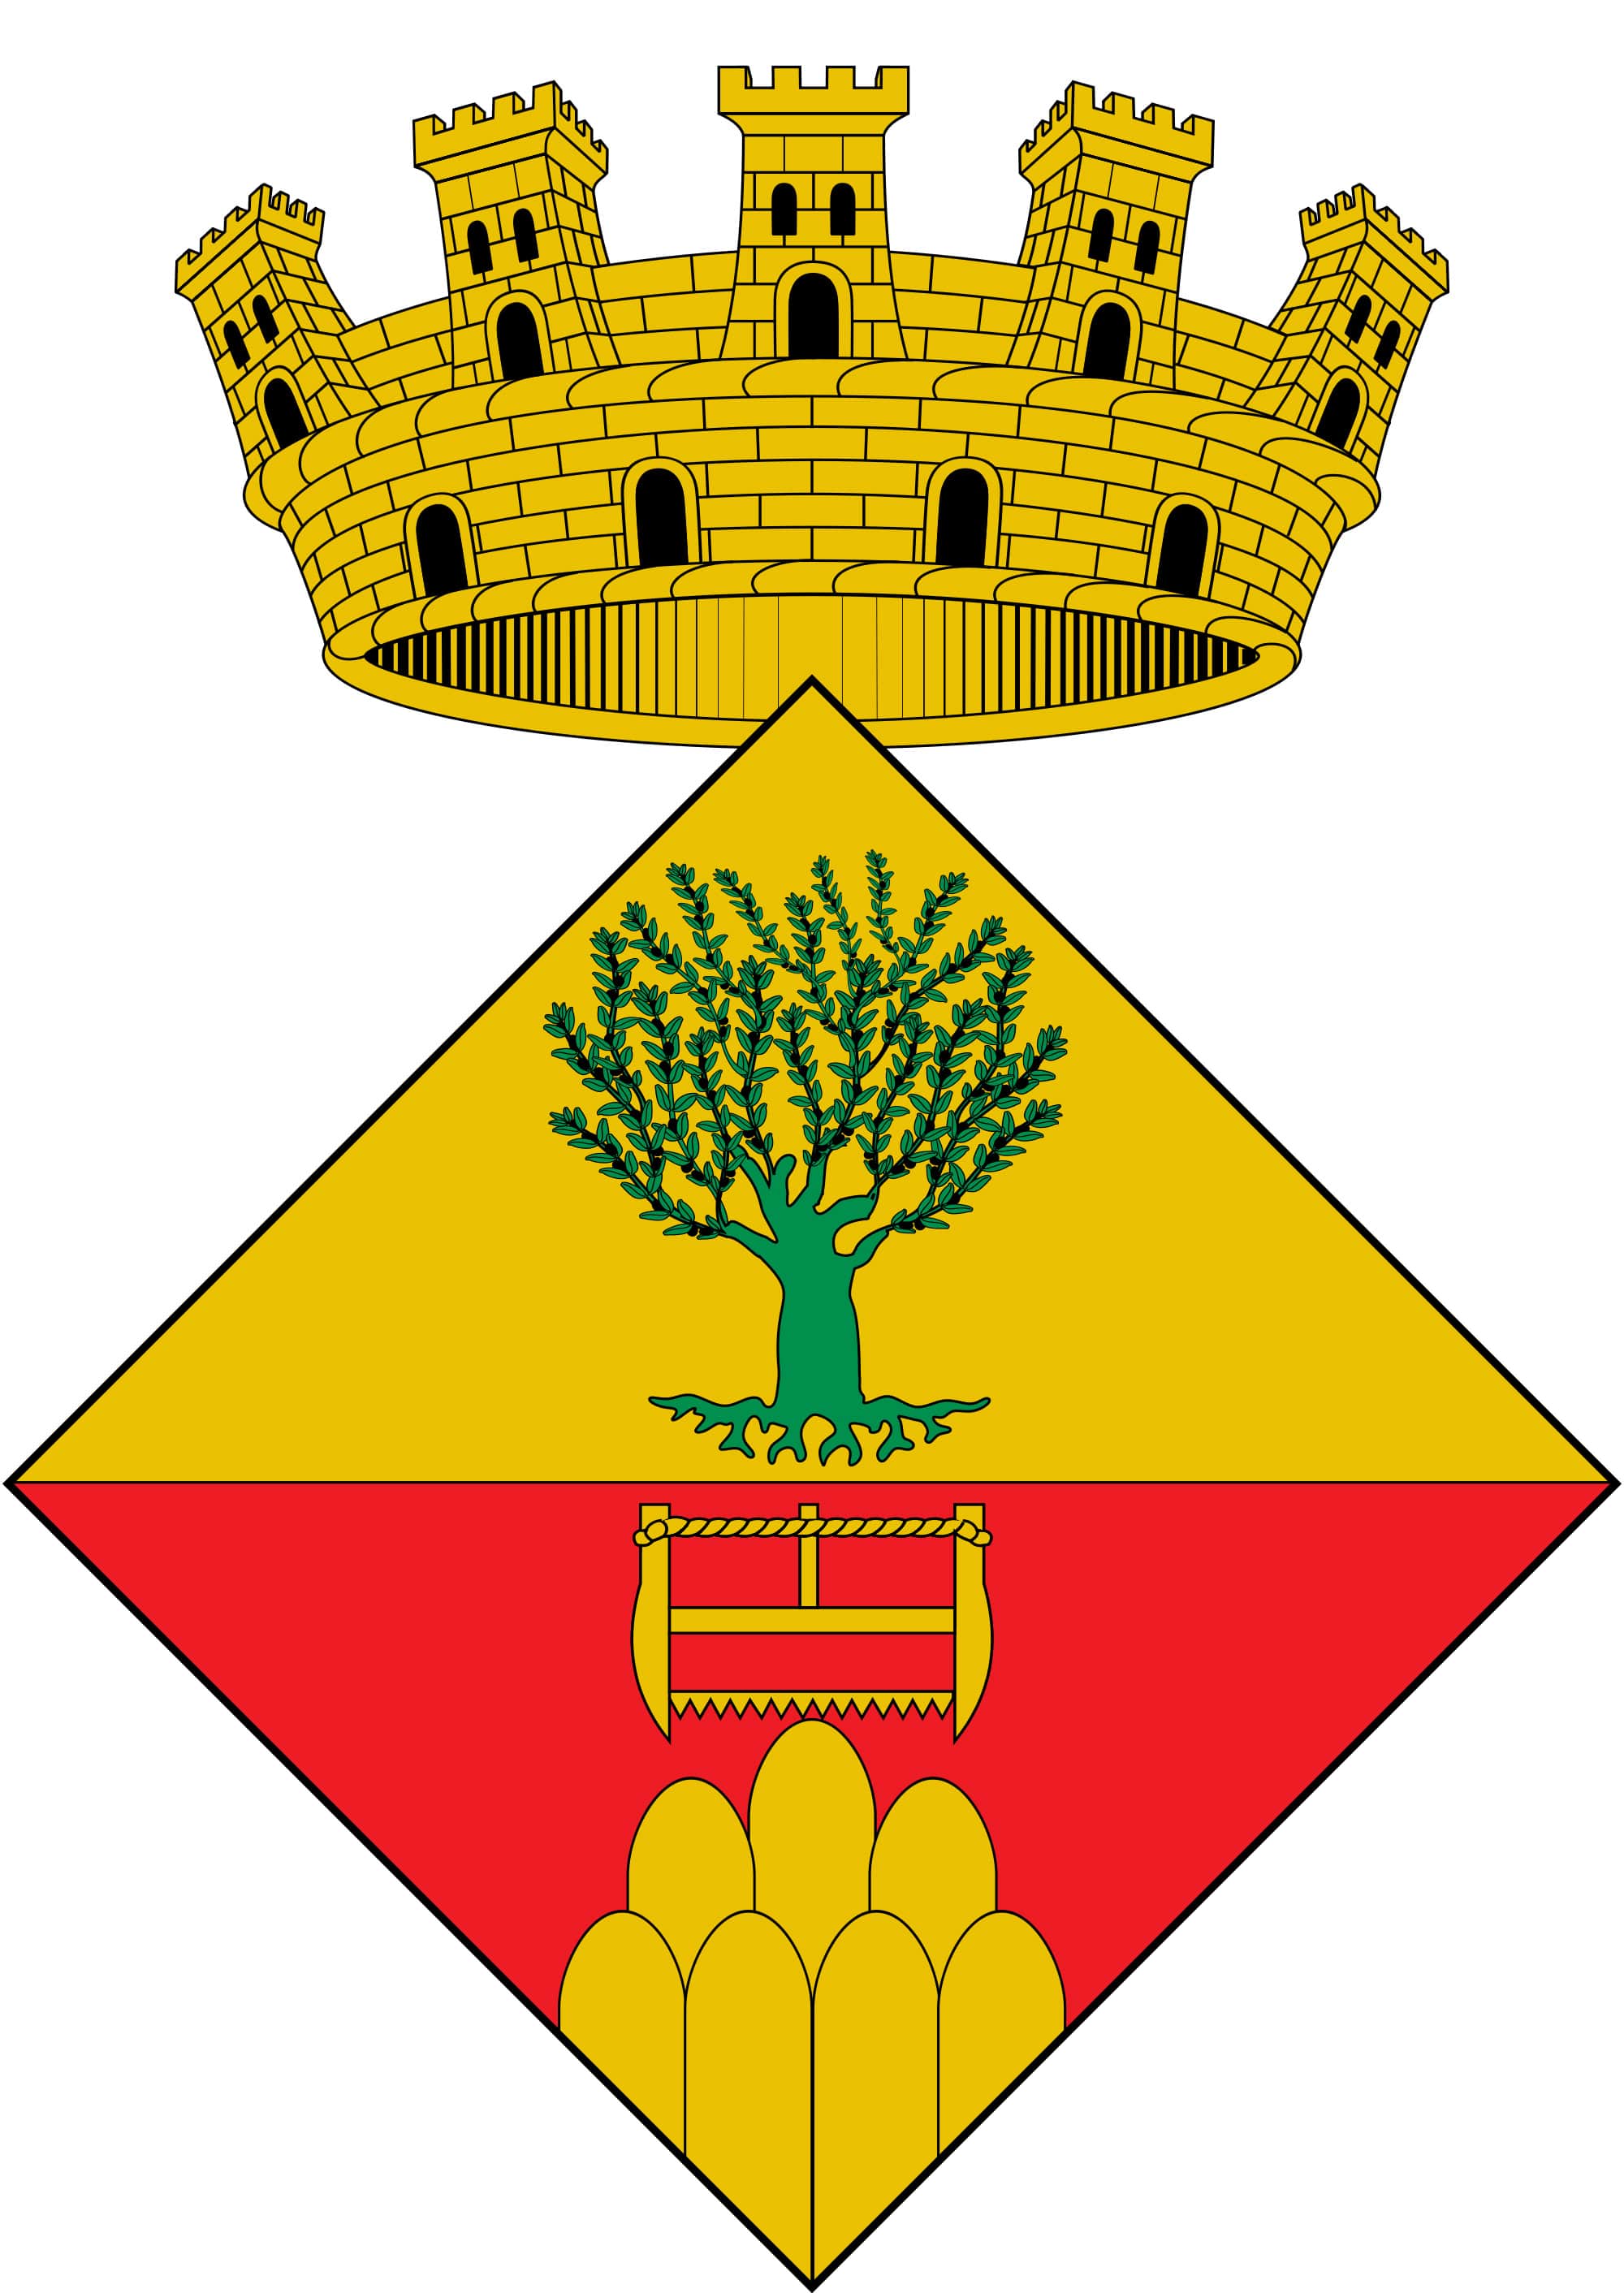 Ajuntament d'Olesa de Montserrat